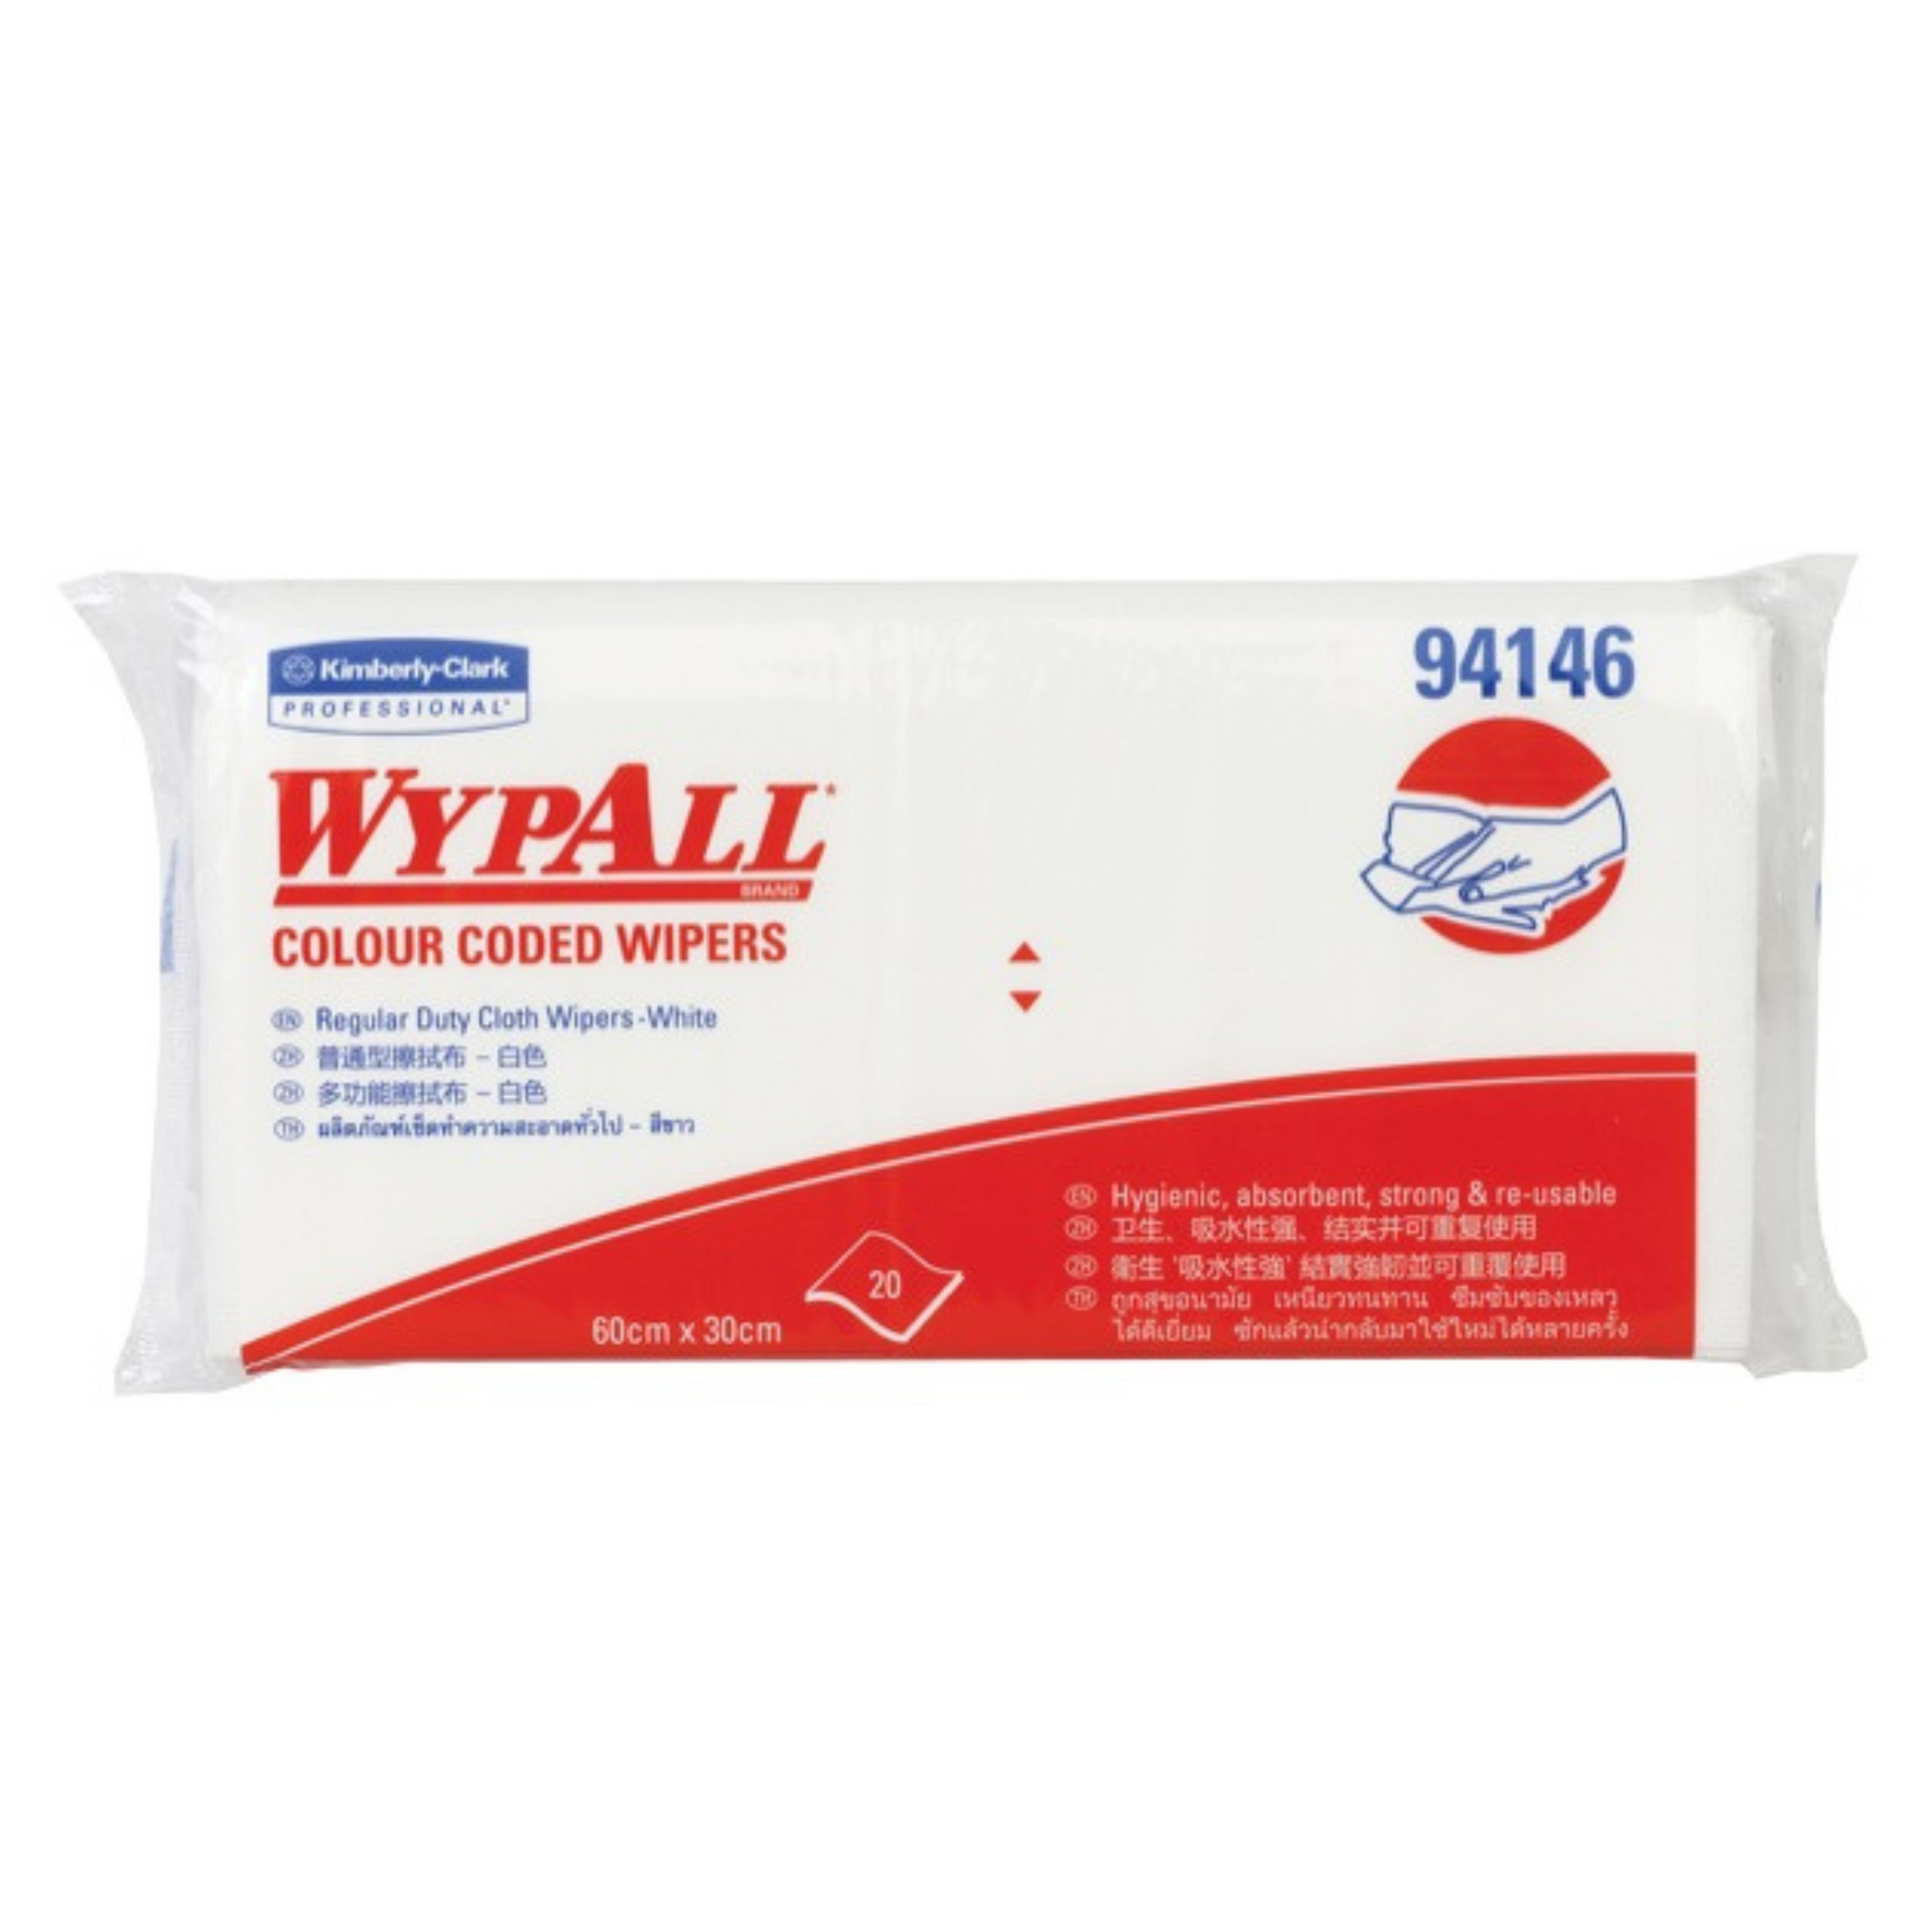 Wypall 94146 Wiper 600x300mm White - Carton (12 x 20pc)